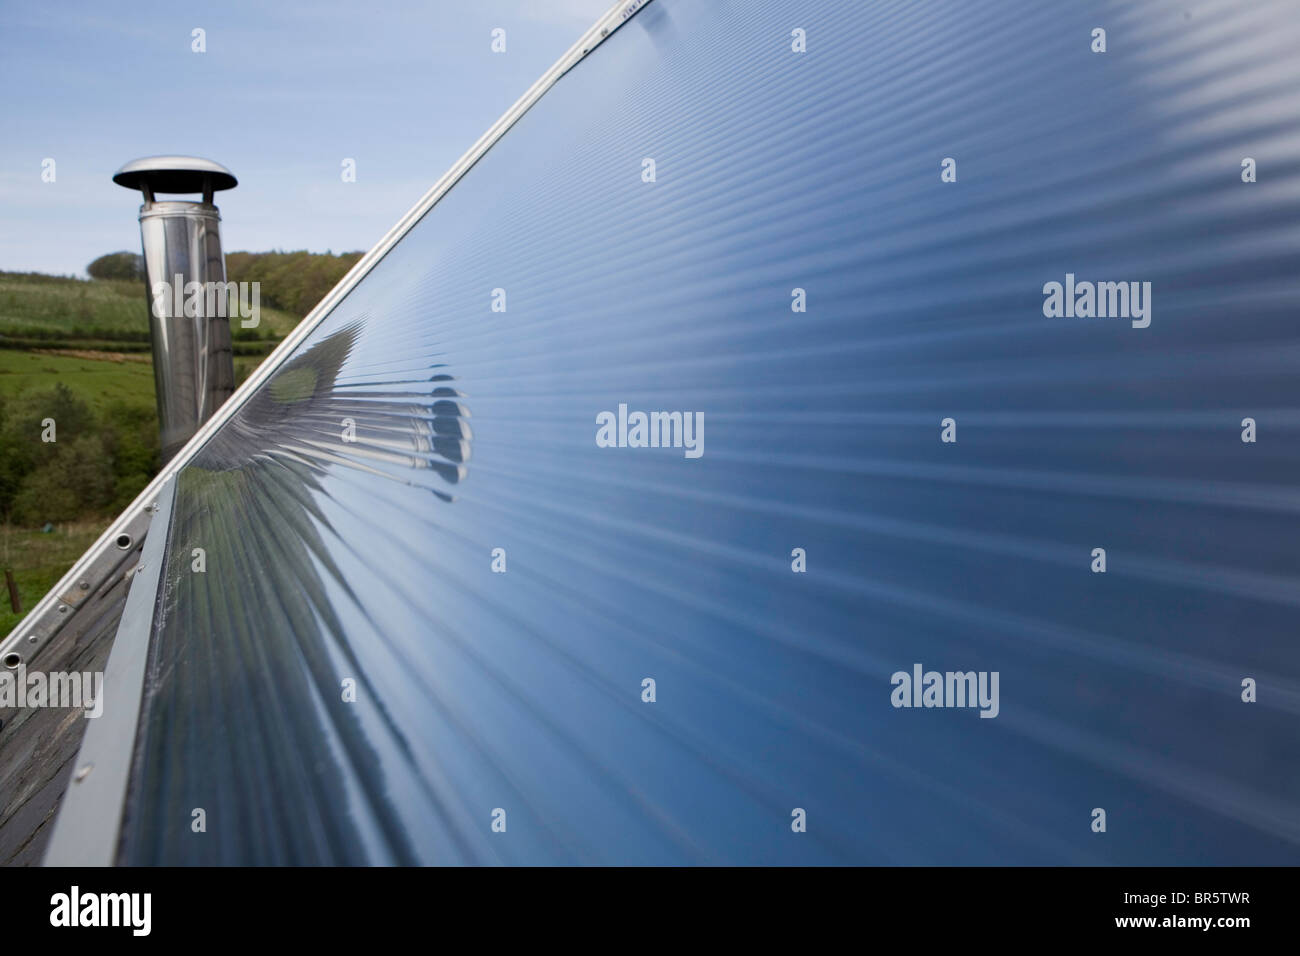 Eine thermische Solarpanel auf dem Dach. Solare Wasser-Heizungen nutzen Wärme von der Sonne, neben herkömmlichen Warmwasserbereiter arbeiten. Stockfoto